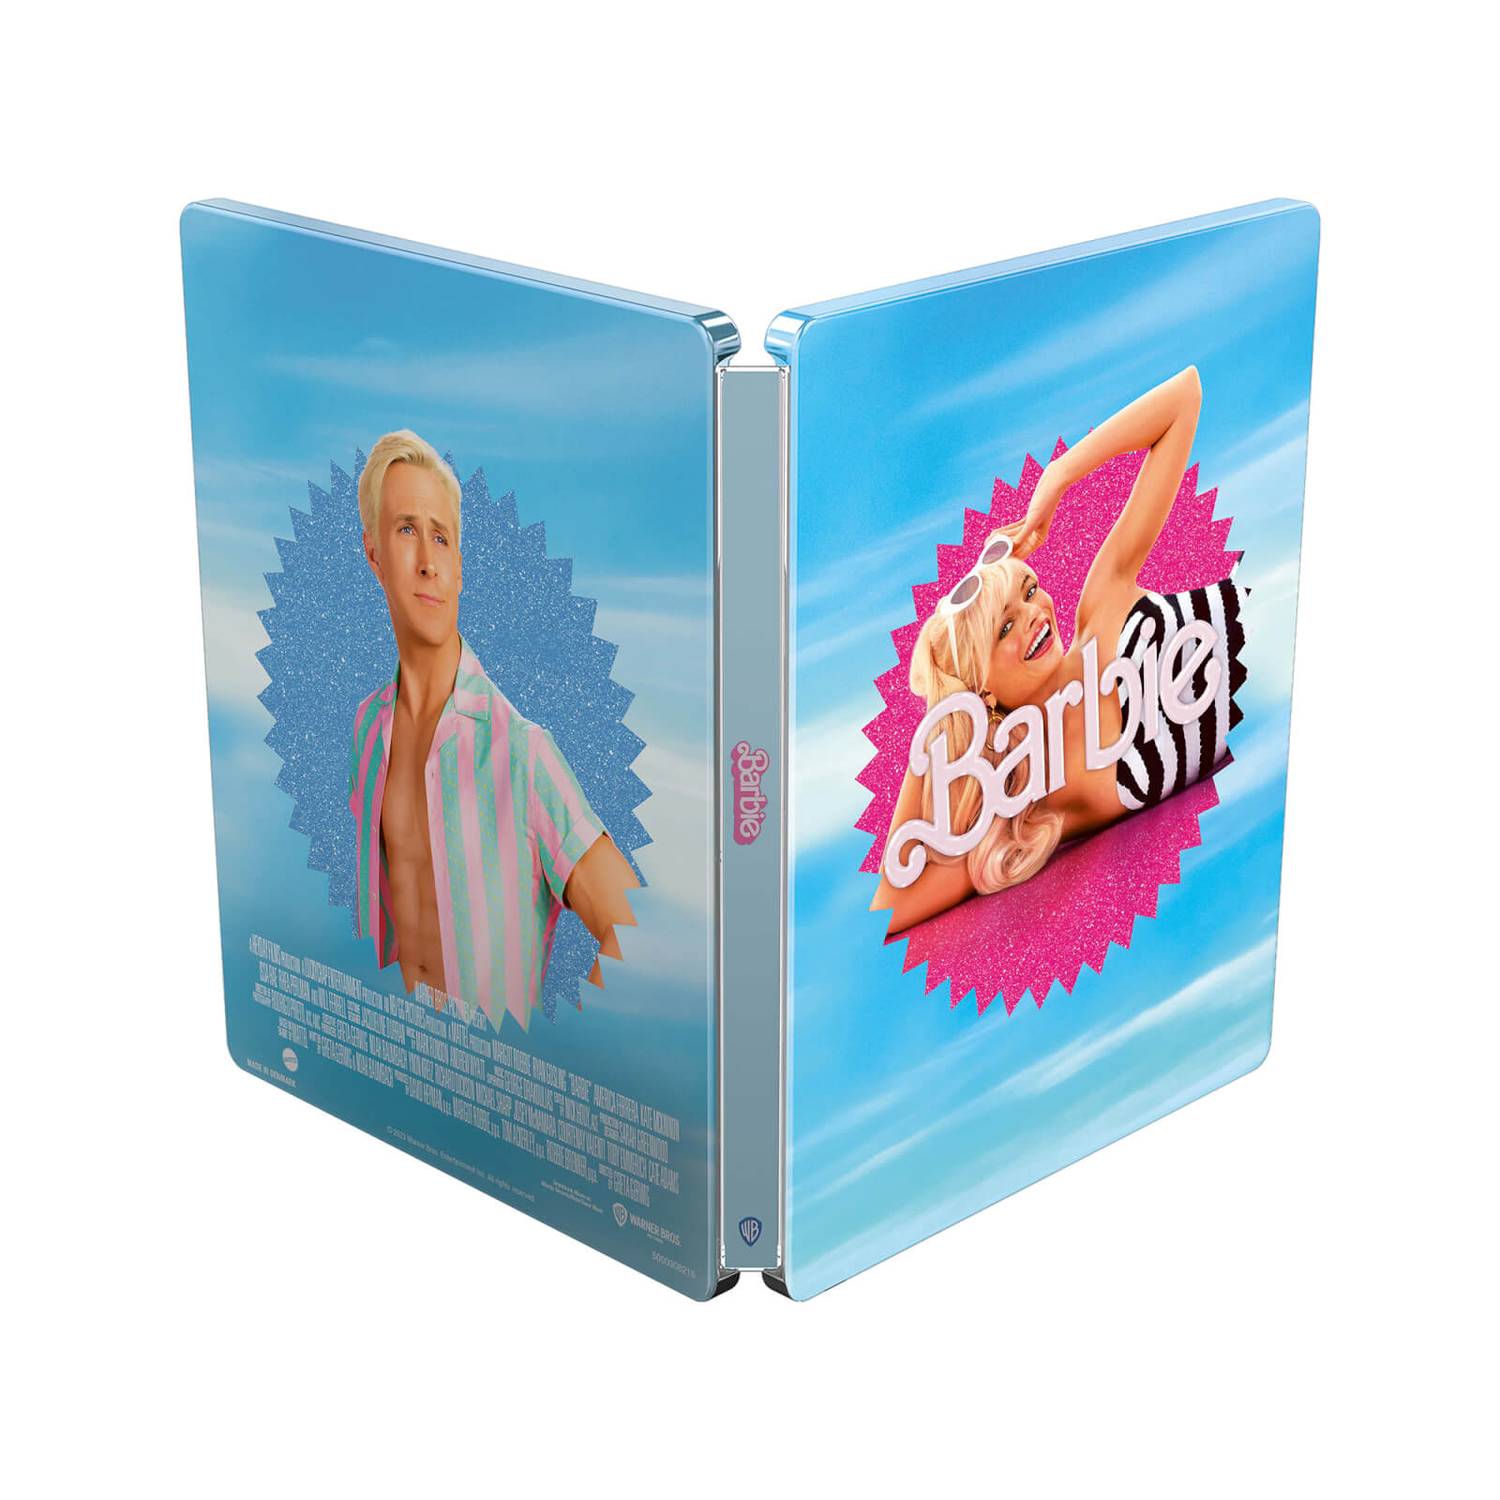 バービー スチールブック輸入版 4K Blu-ray フルスリップ-